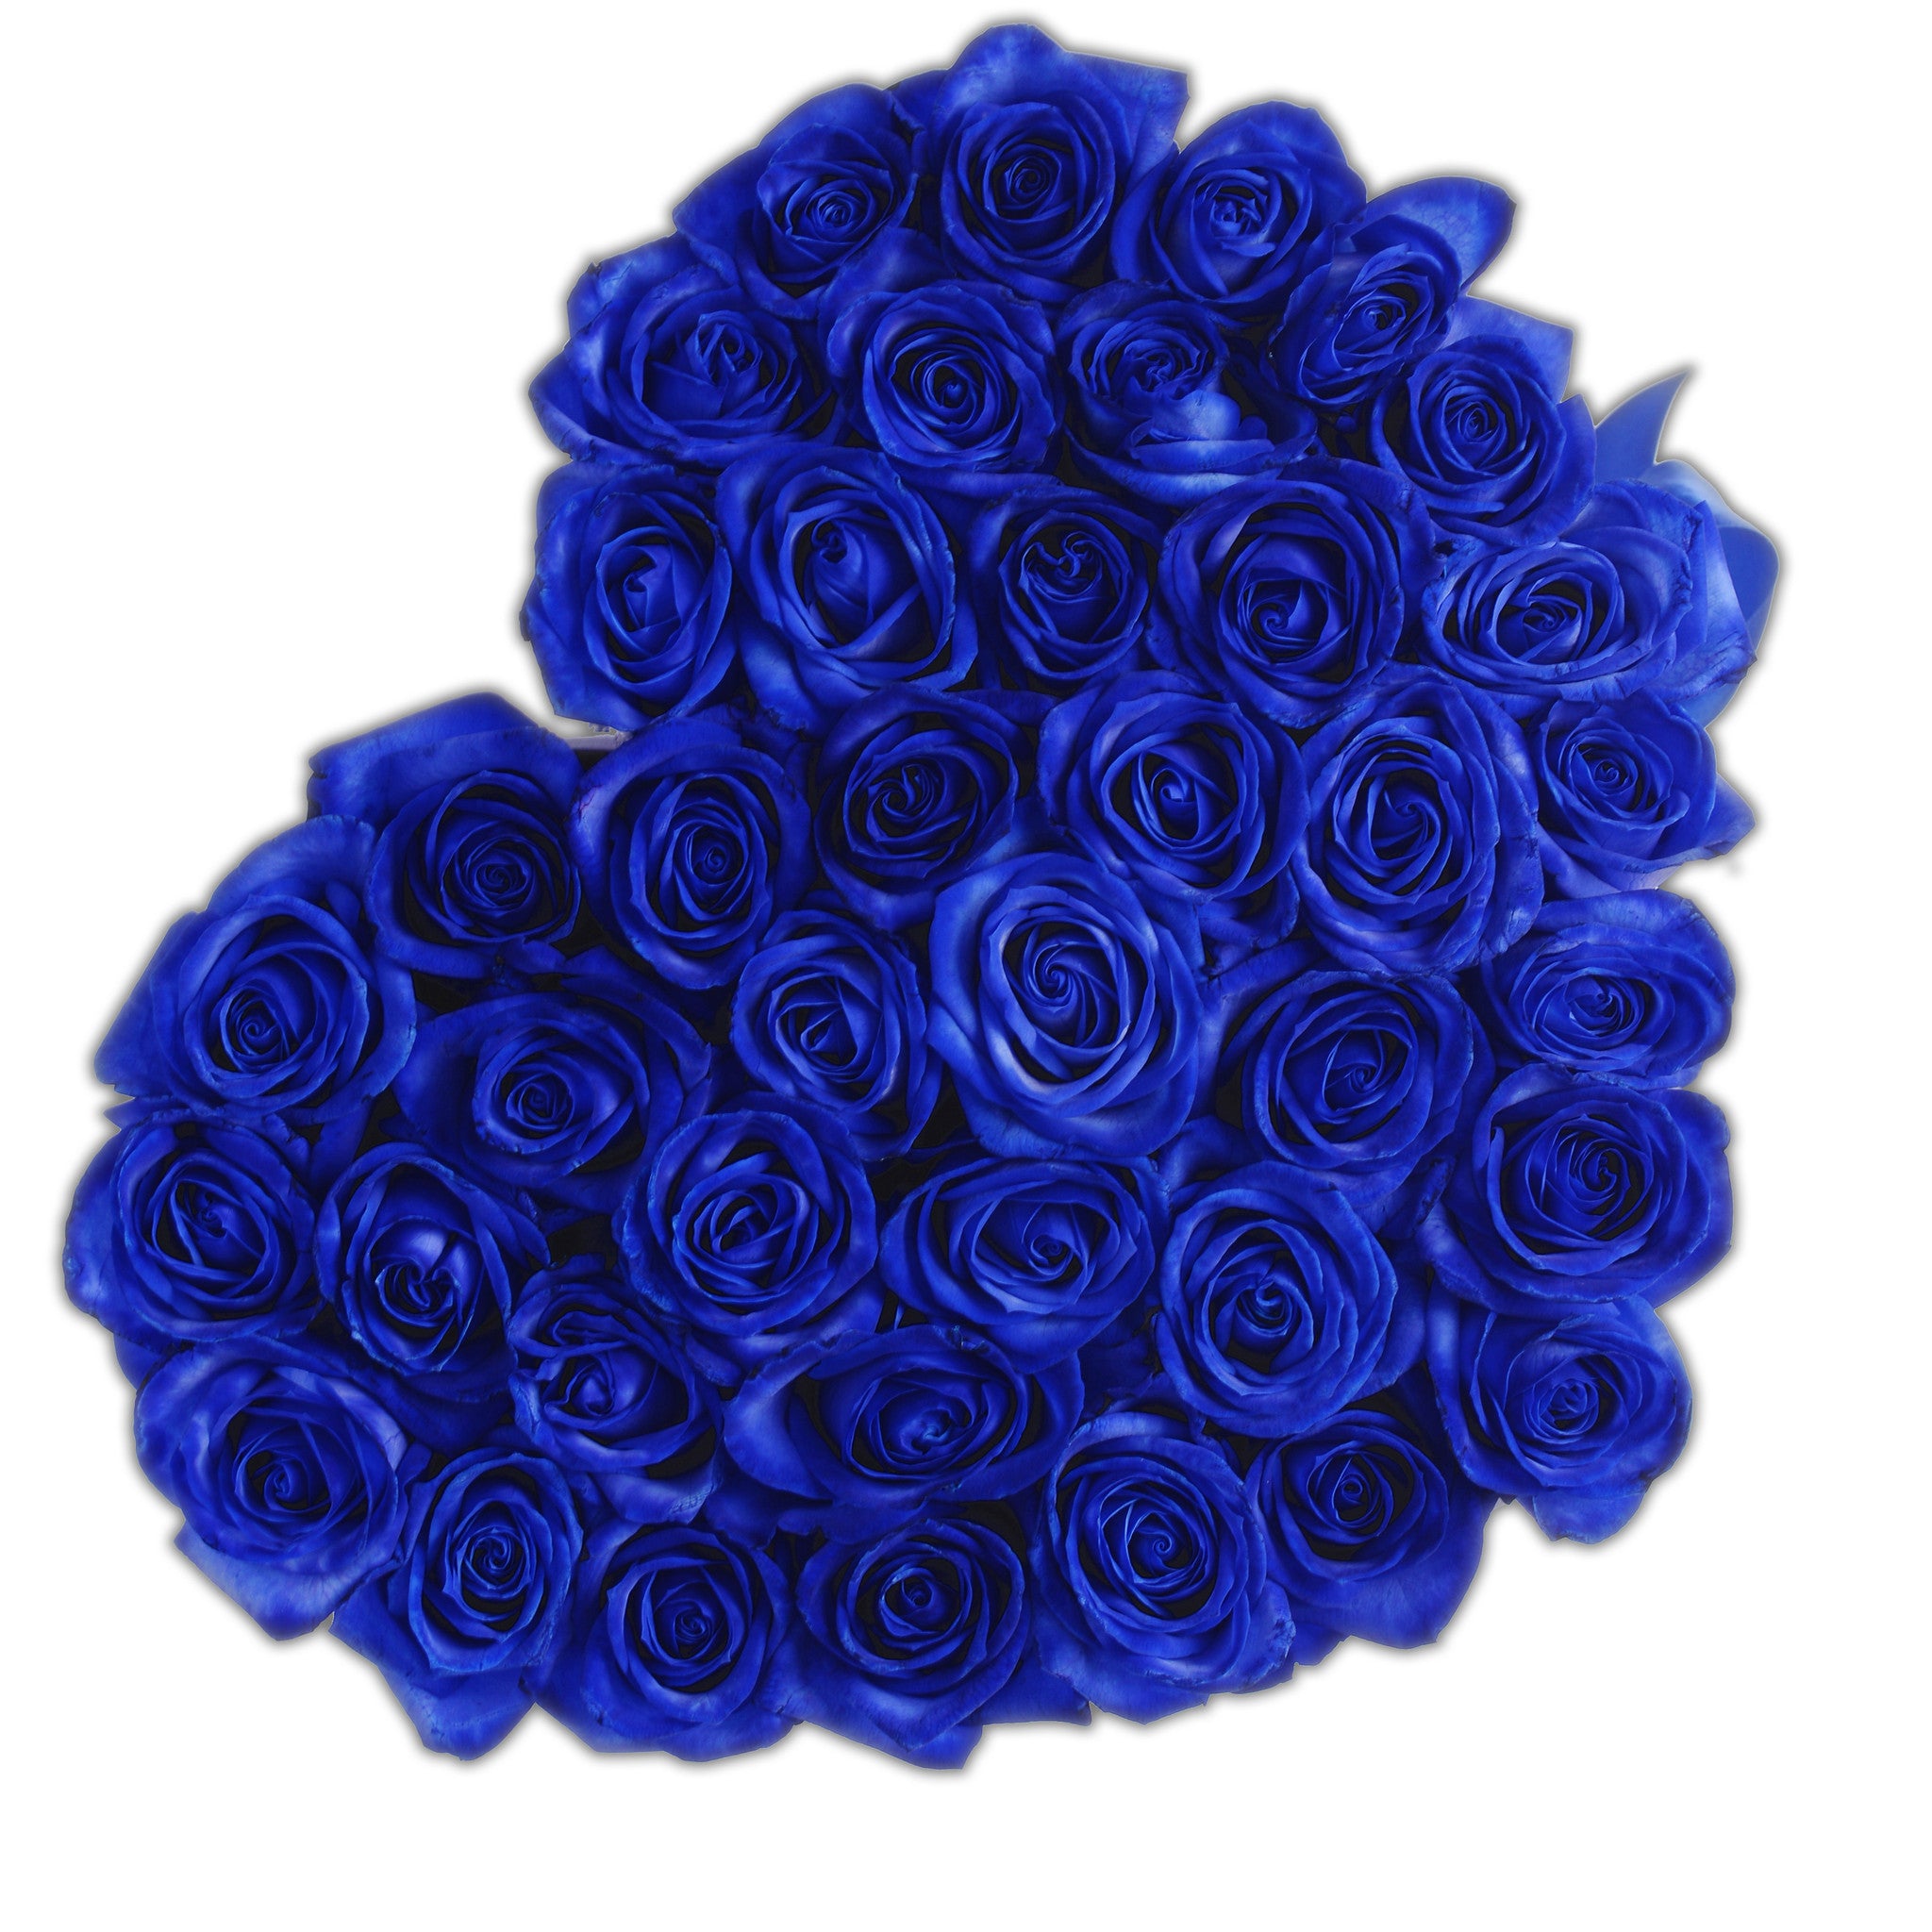 Heart - Blue Roses - White Box - The Million Roses Budapest